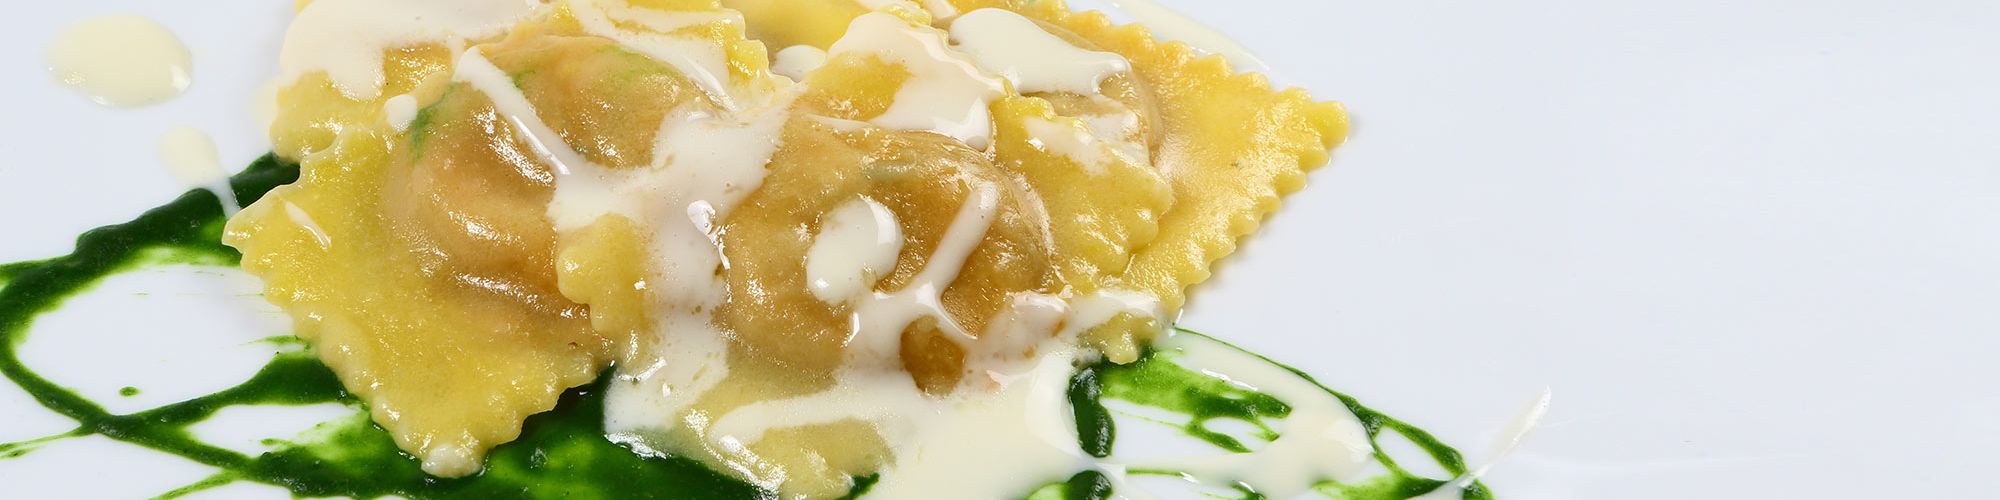 ricetta Ravioloni con crema di topinambur e pesto con pasta fresca